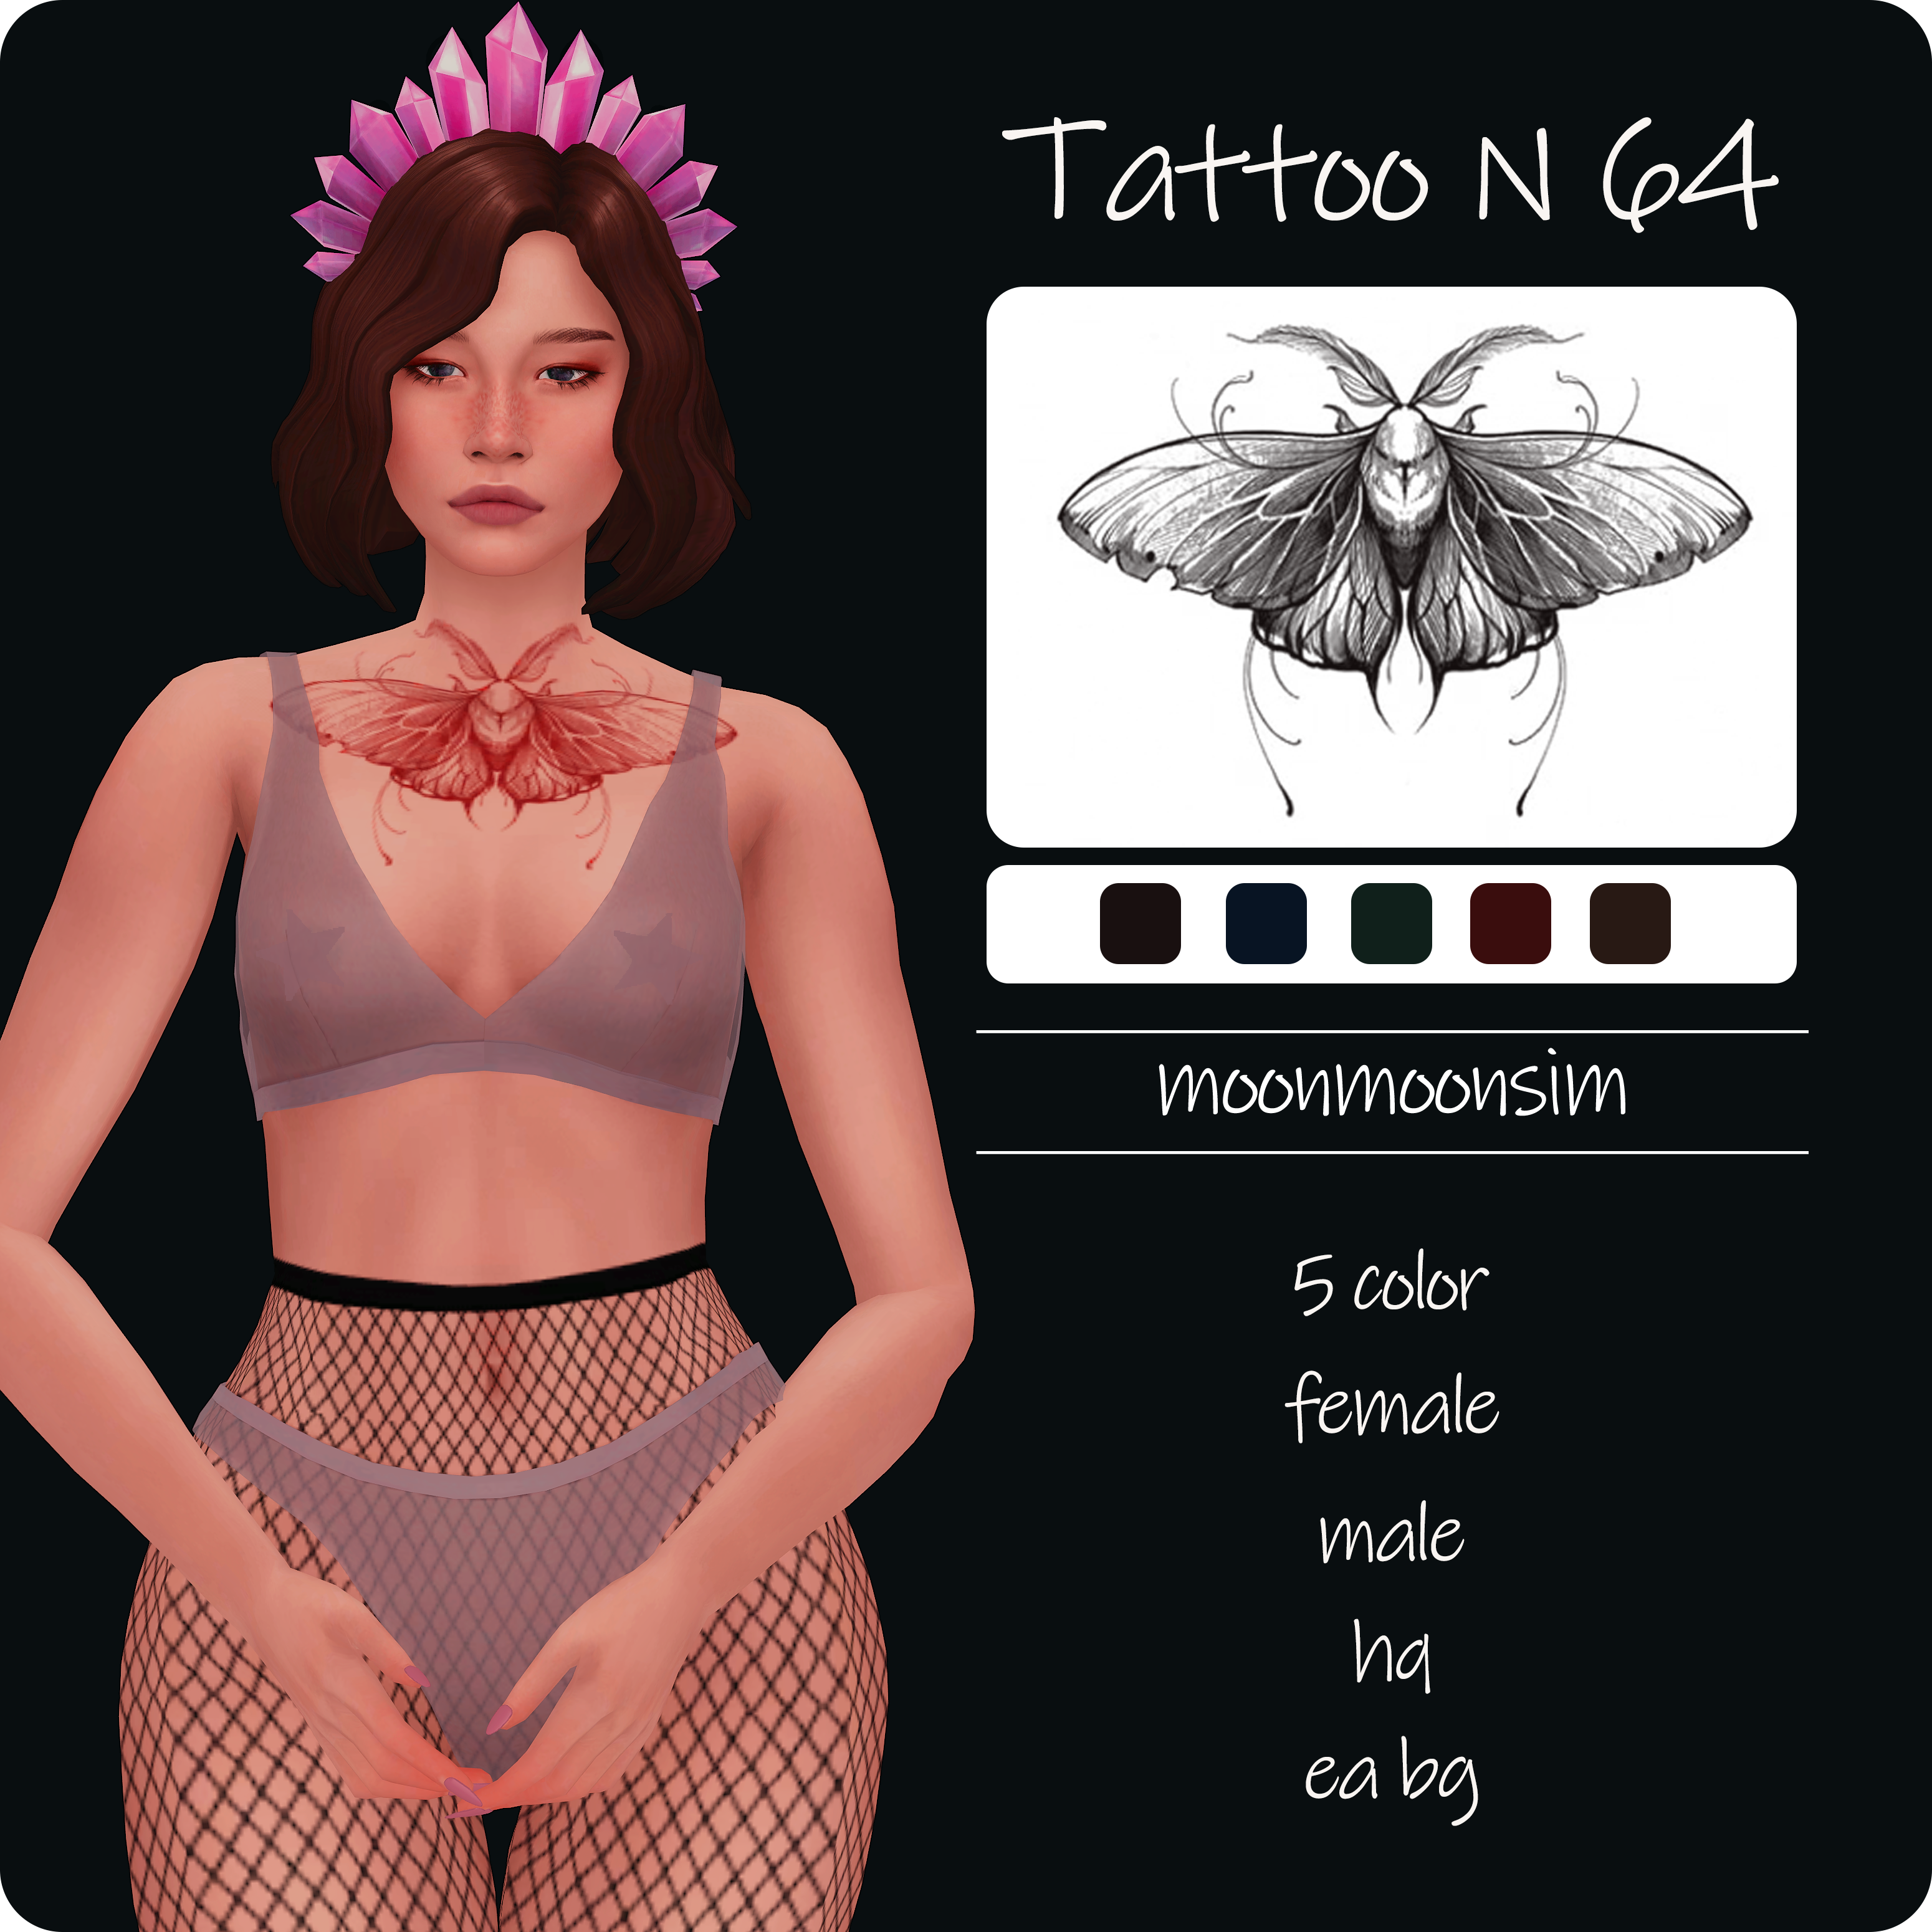 Tattoo N64